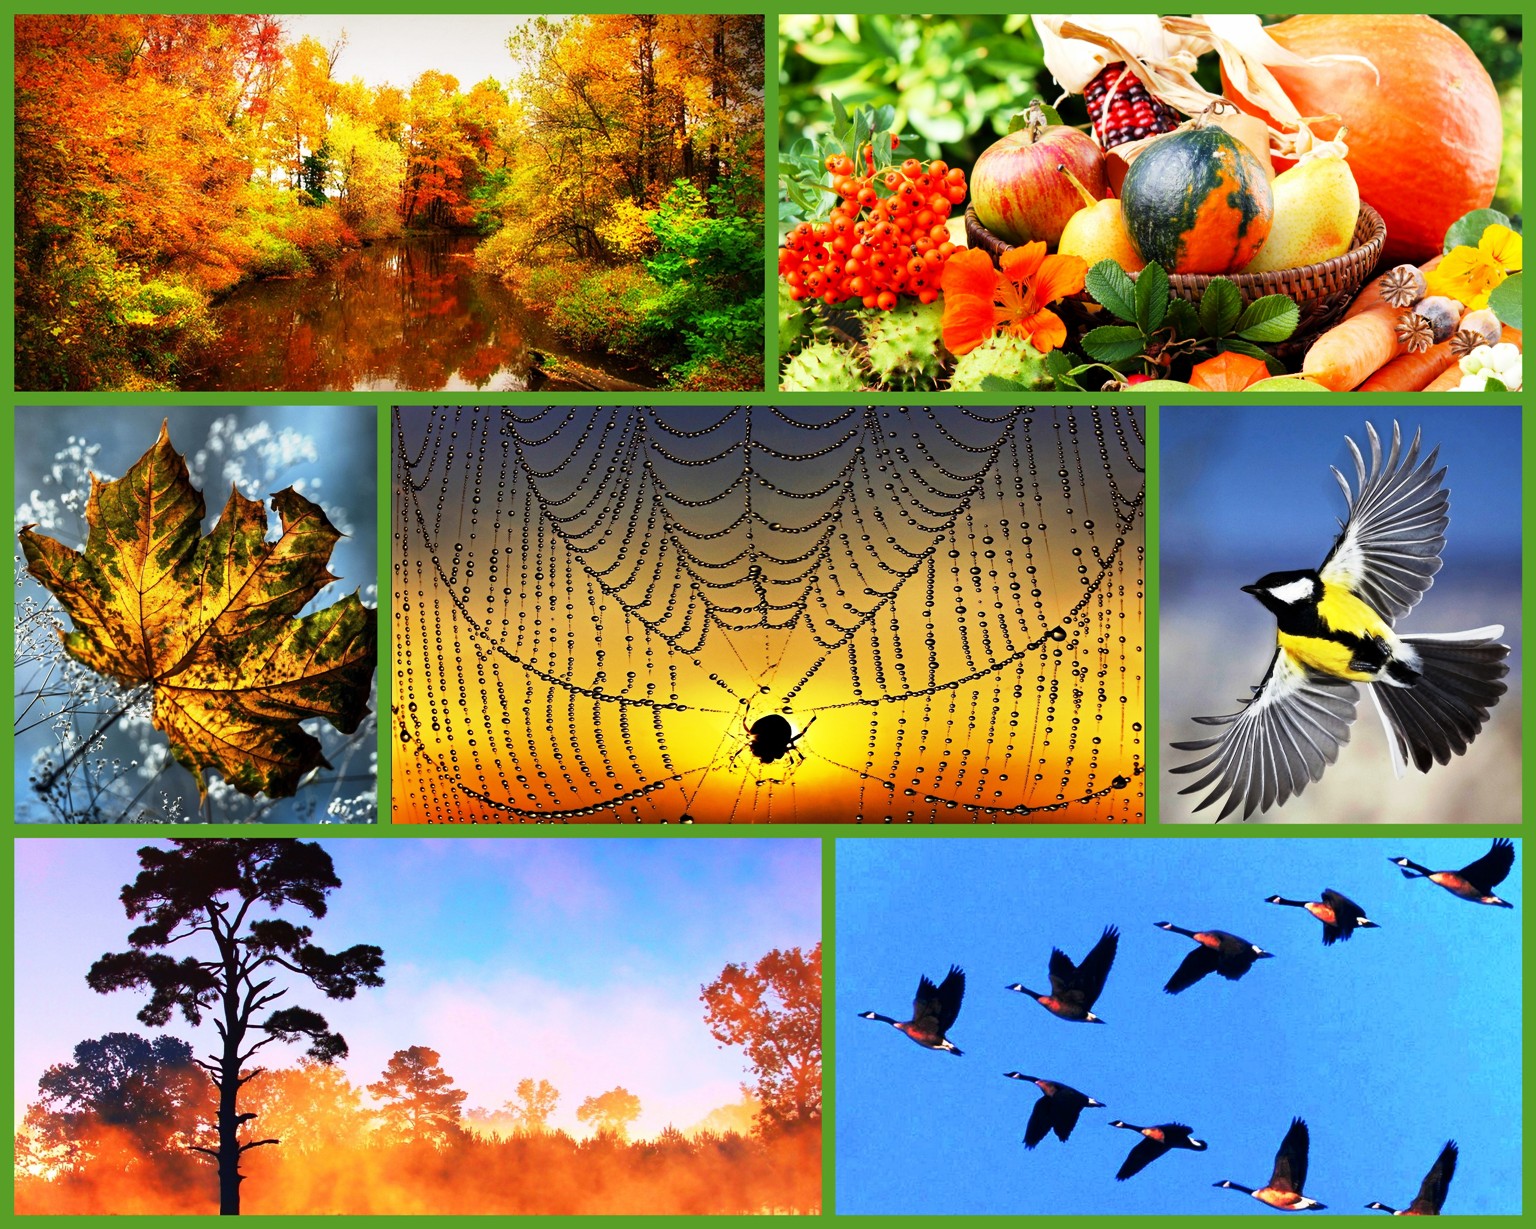 Осеннего неживой природы. Осенние явления природы. Приметы осени. Осенние сезонные явления в природе. Природные явления осенью.